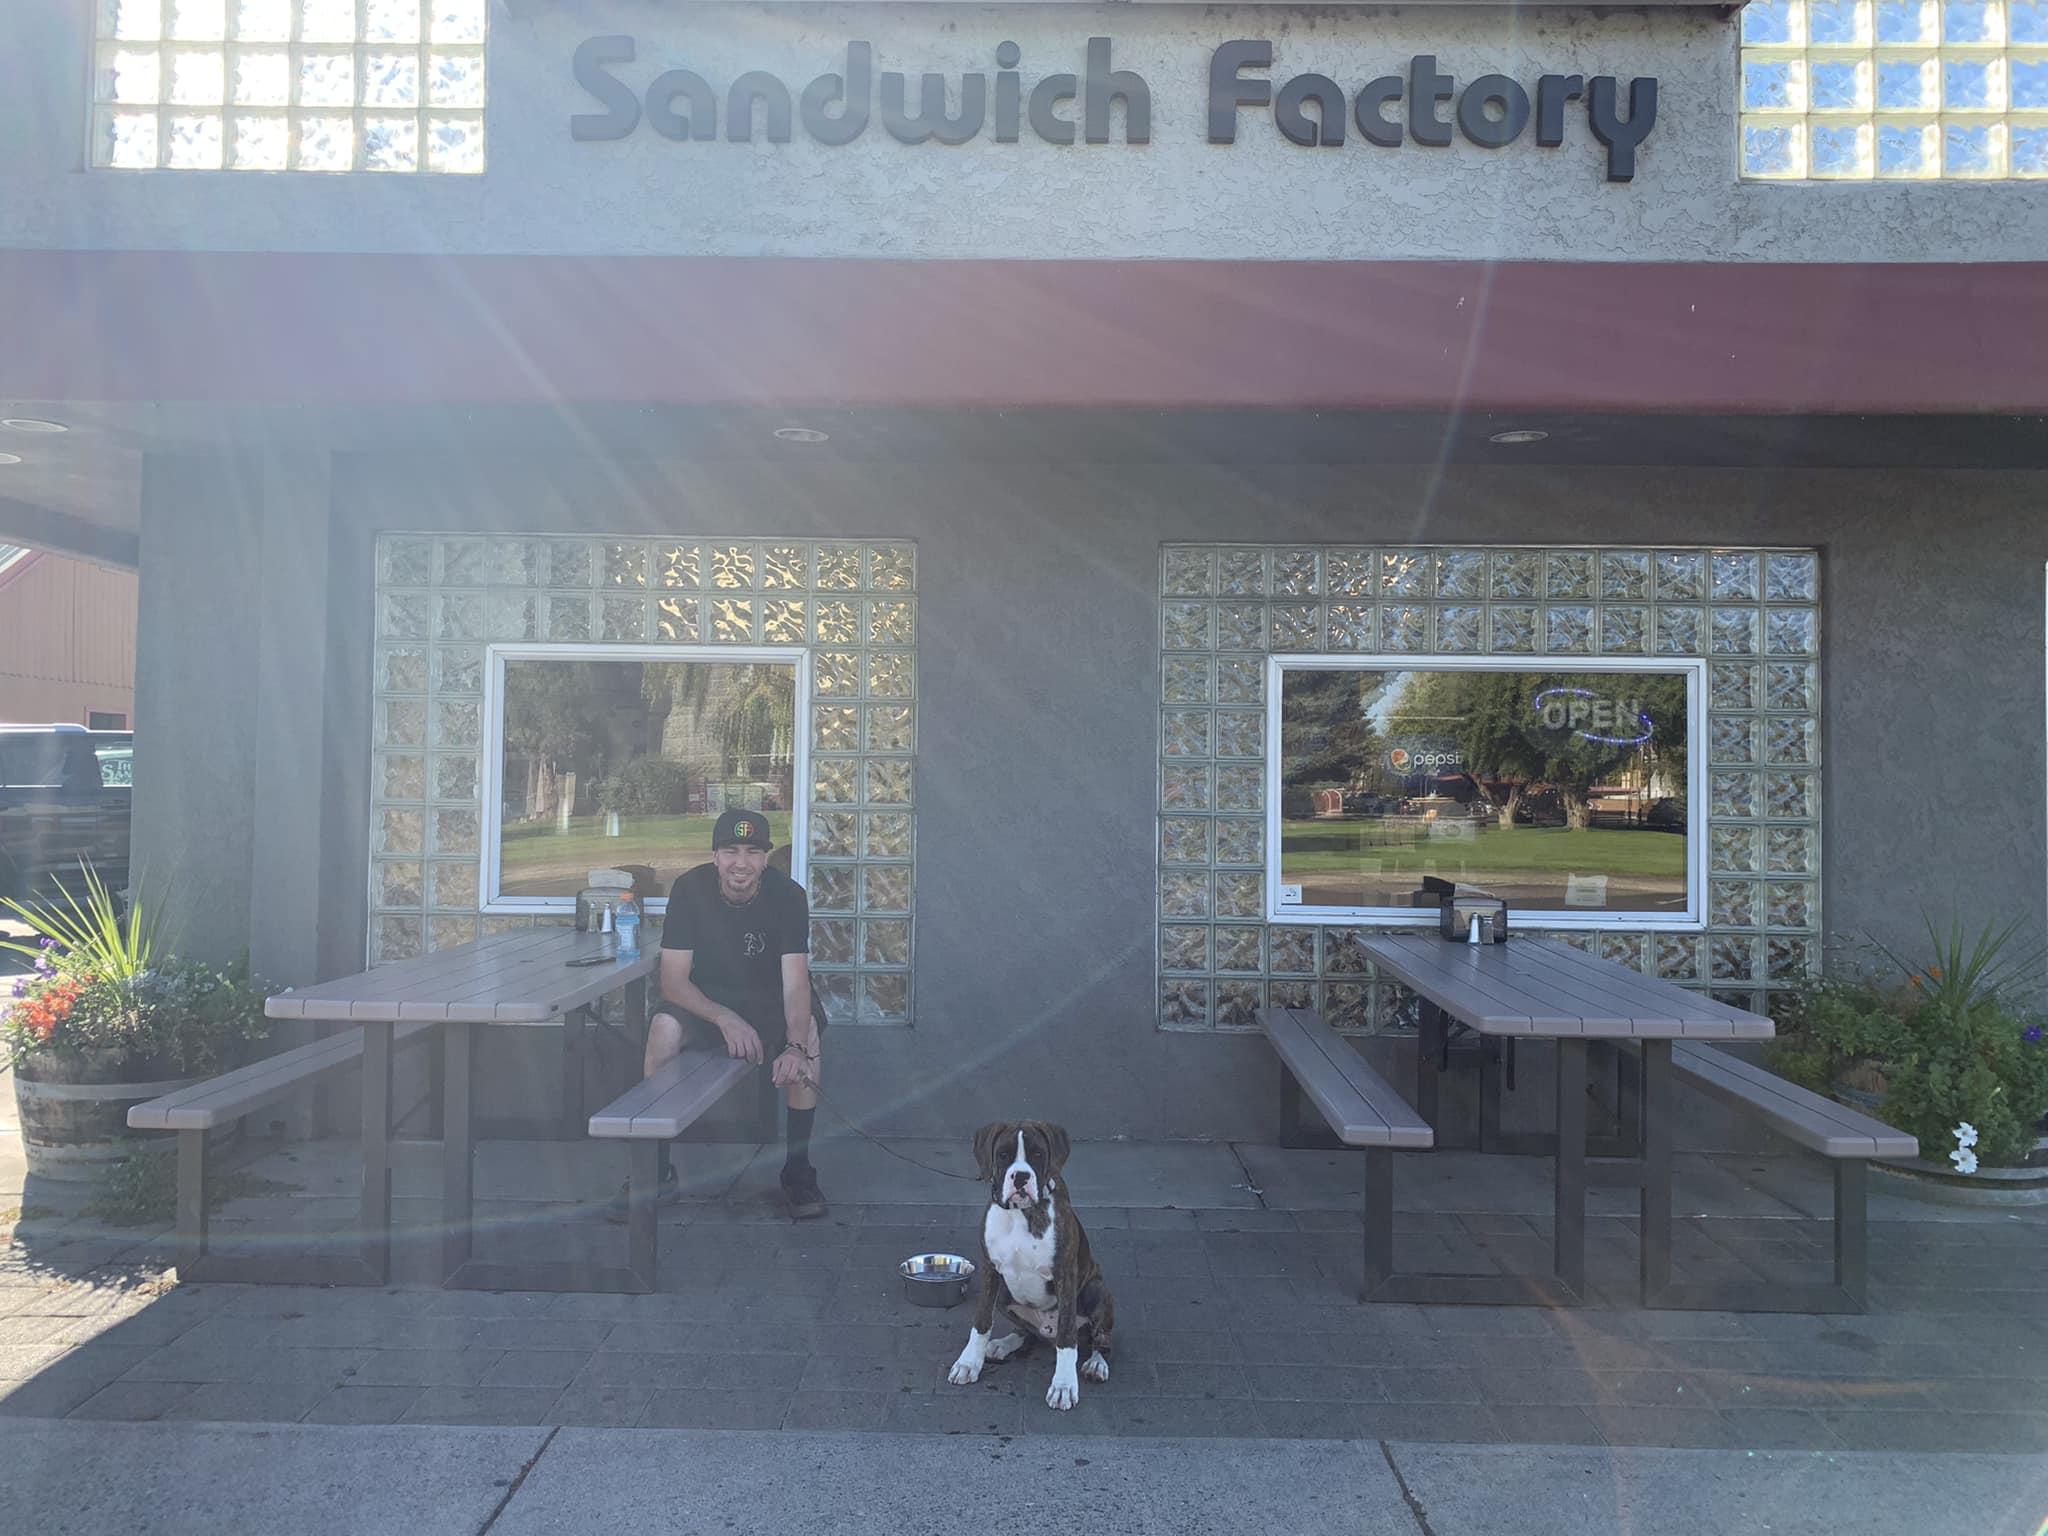 Pet Friendly The Sandwich Factory